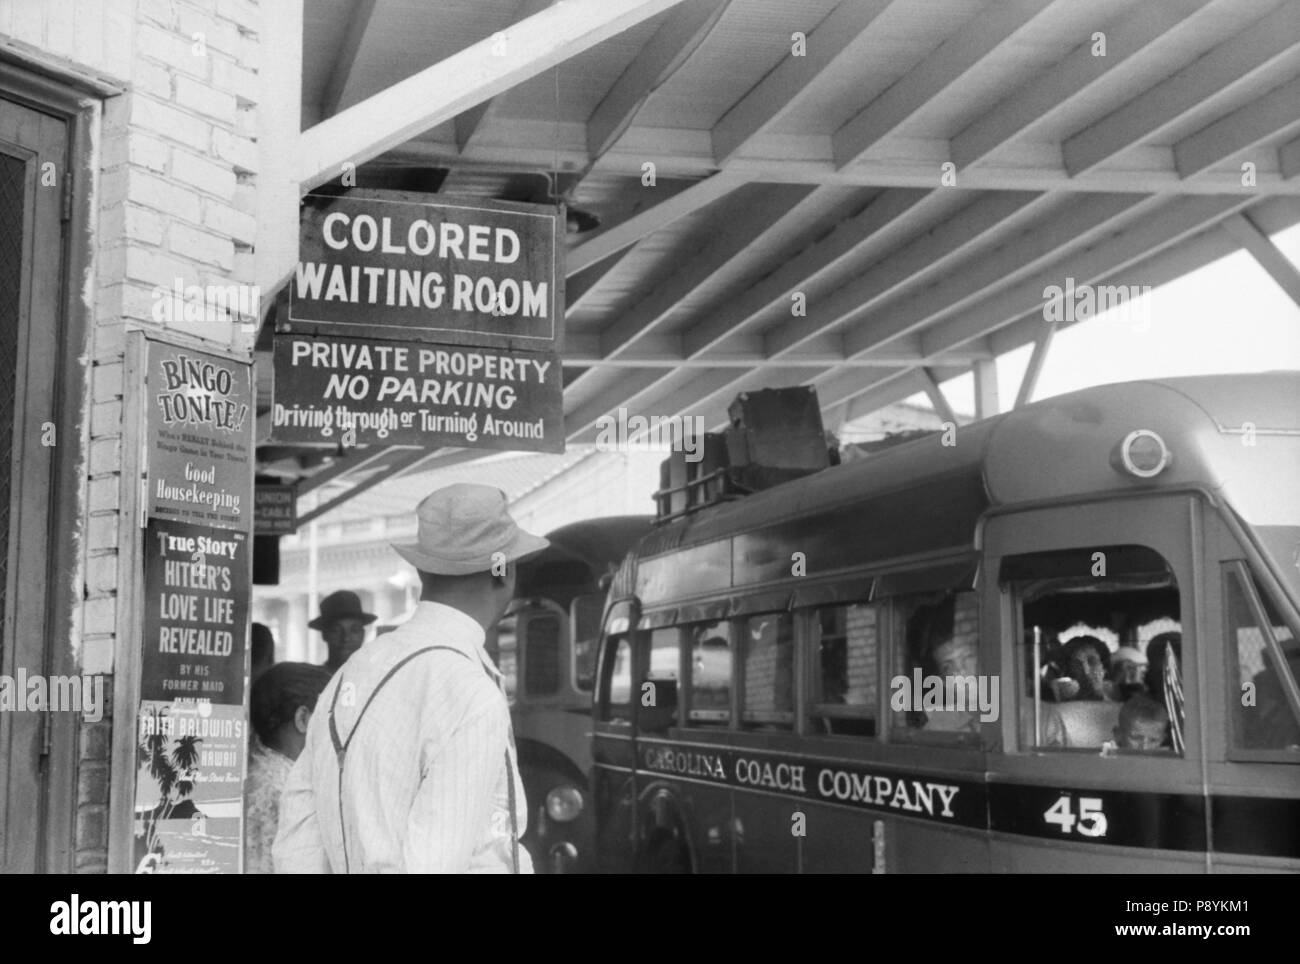 La stazione degli autobus con il segno 'colorata sala attesa', Durham, North Carolina, Stati Uniti d'America, Jack Delano, Ufficio di informazione di guerra, Maggio 1940 Foto Stock